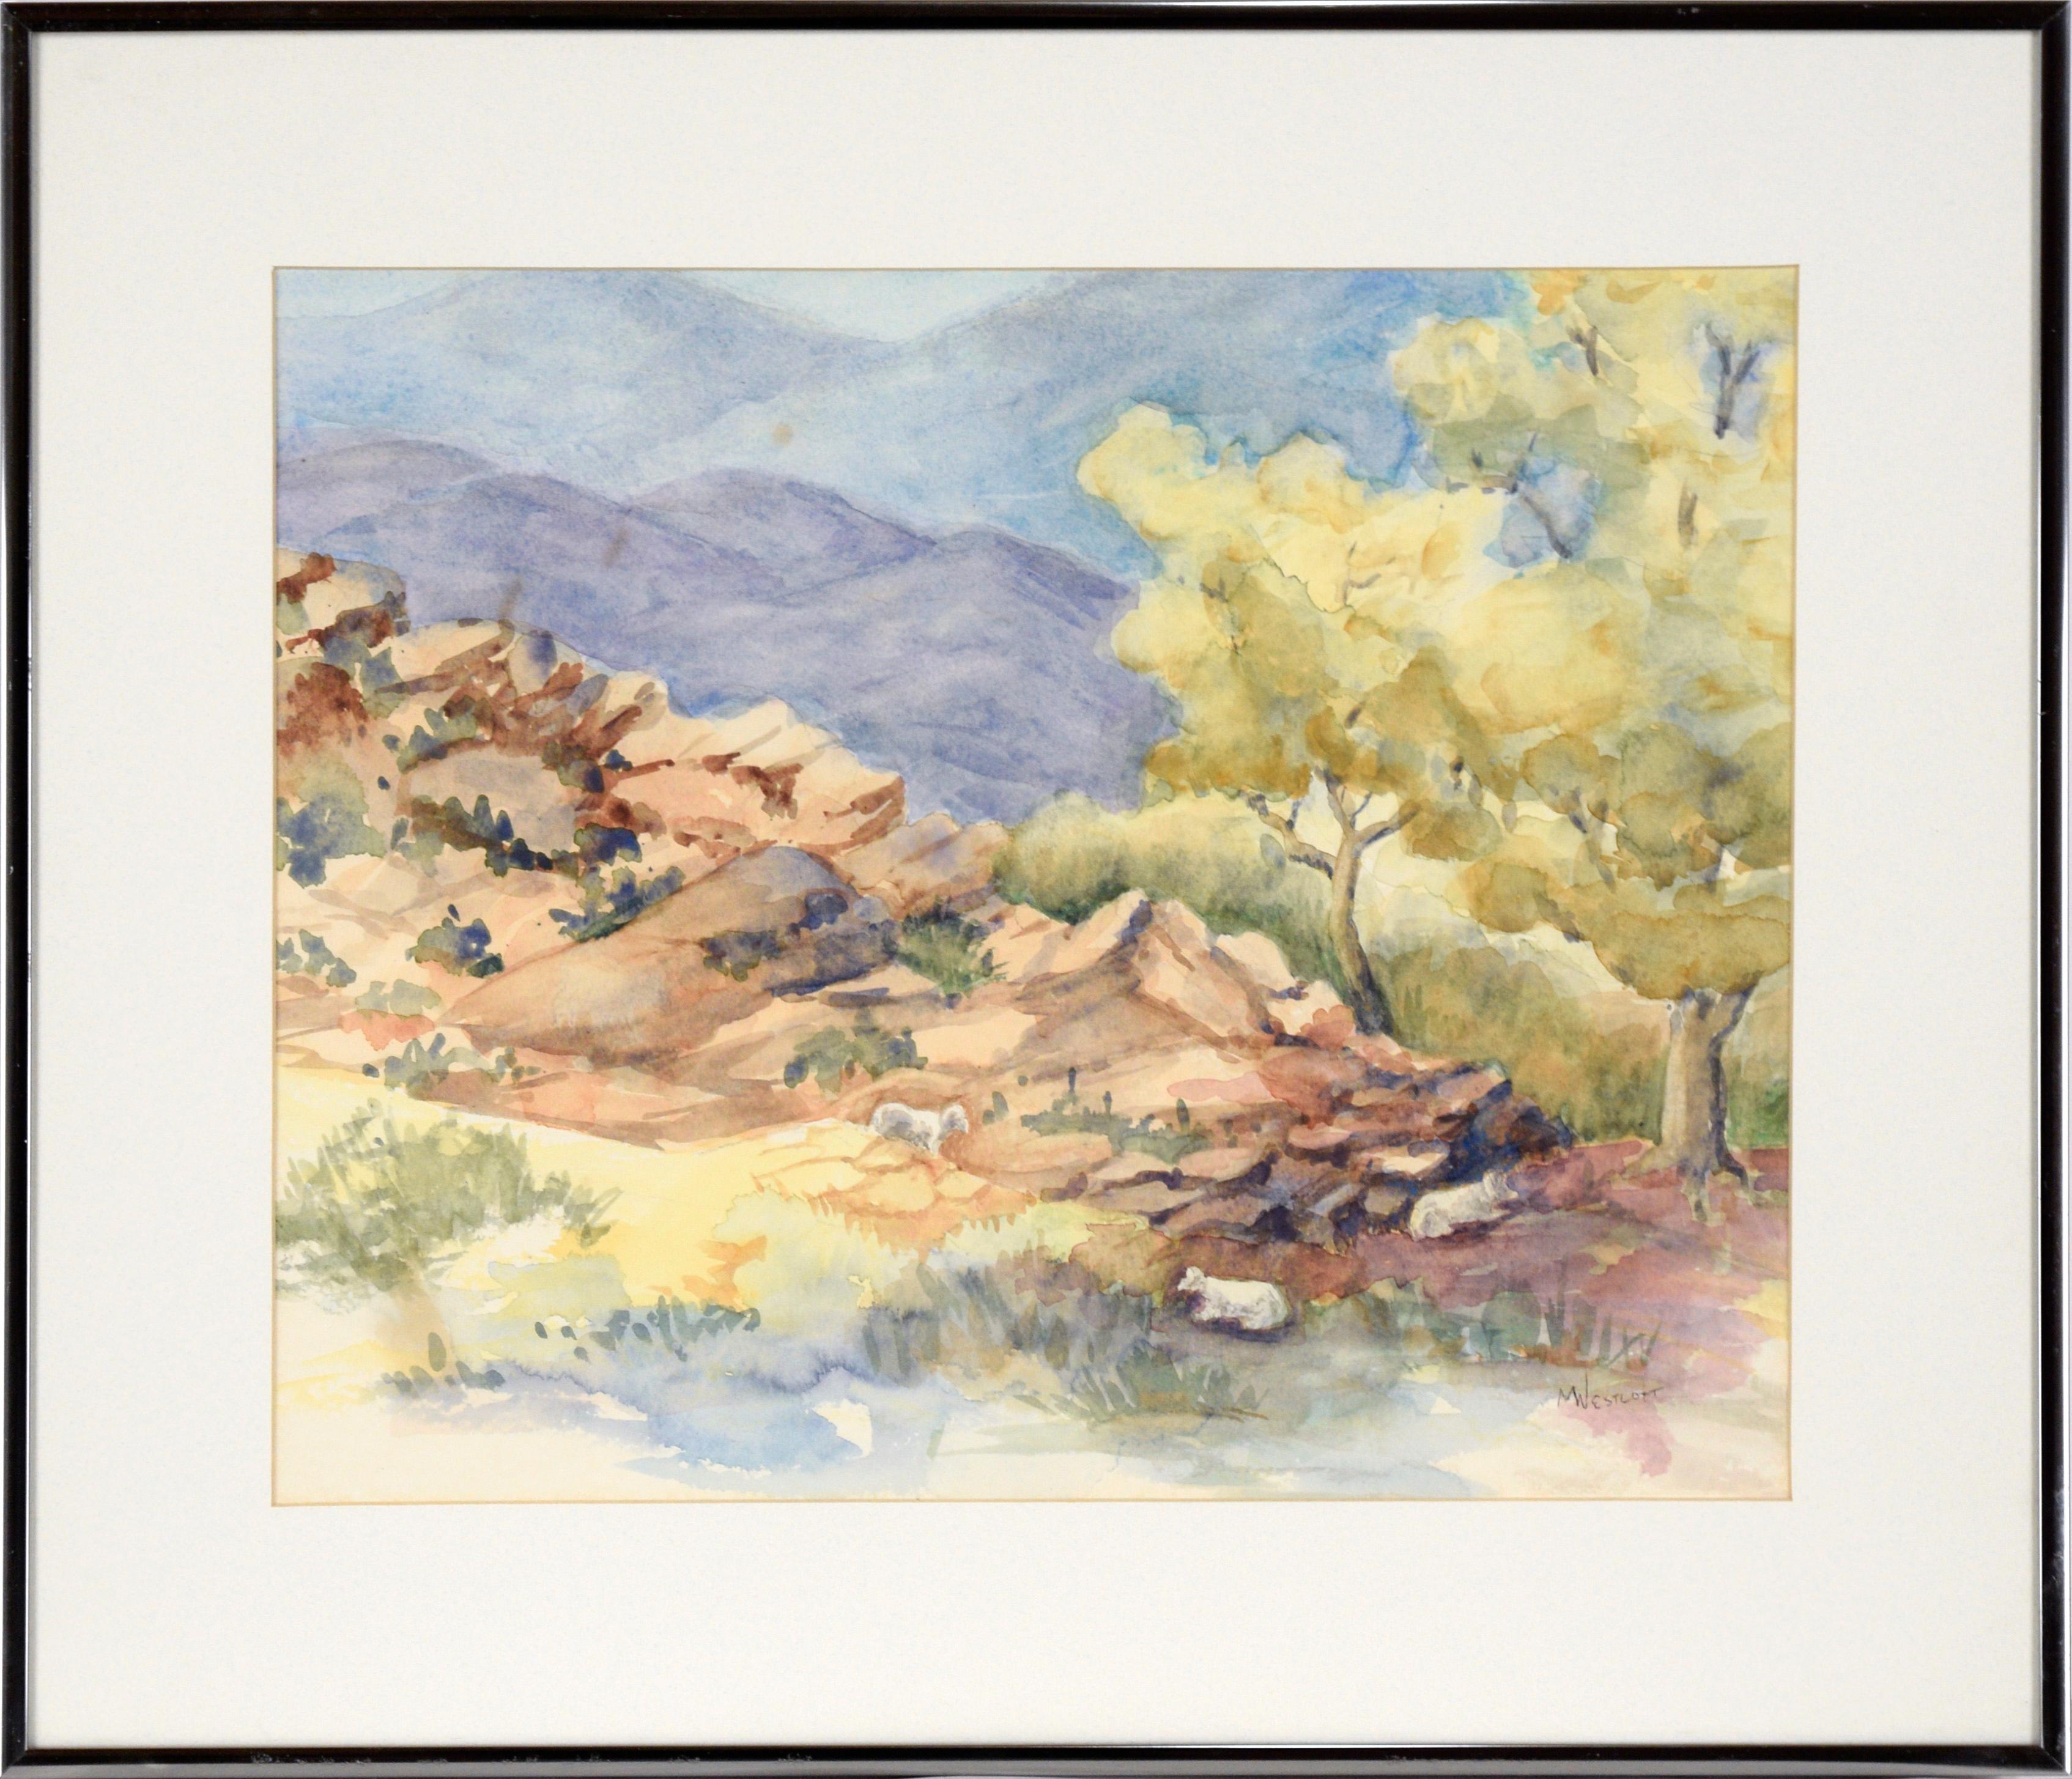 Margie Westcott Landscape Art - "Mountain Climbers" - Mountain Landscape in Watercolor on Paper